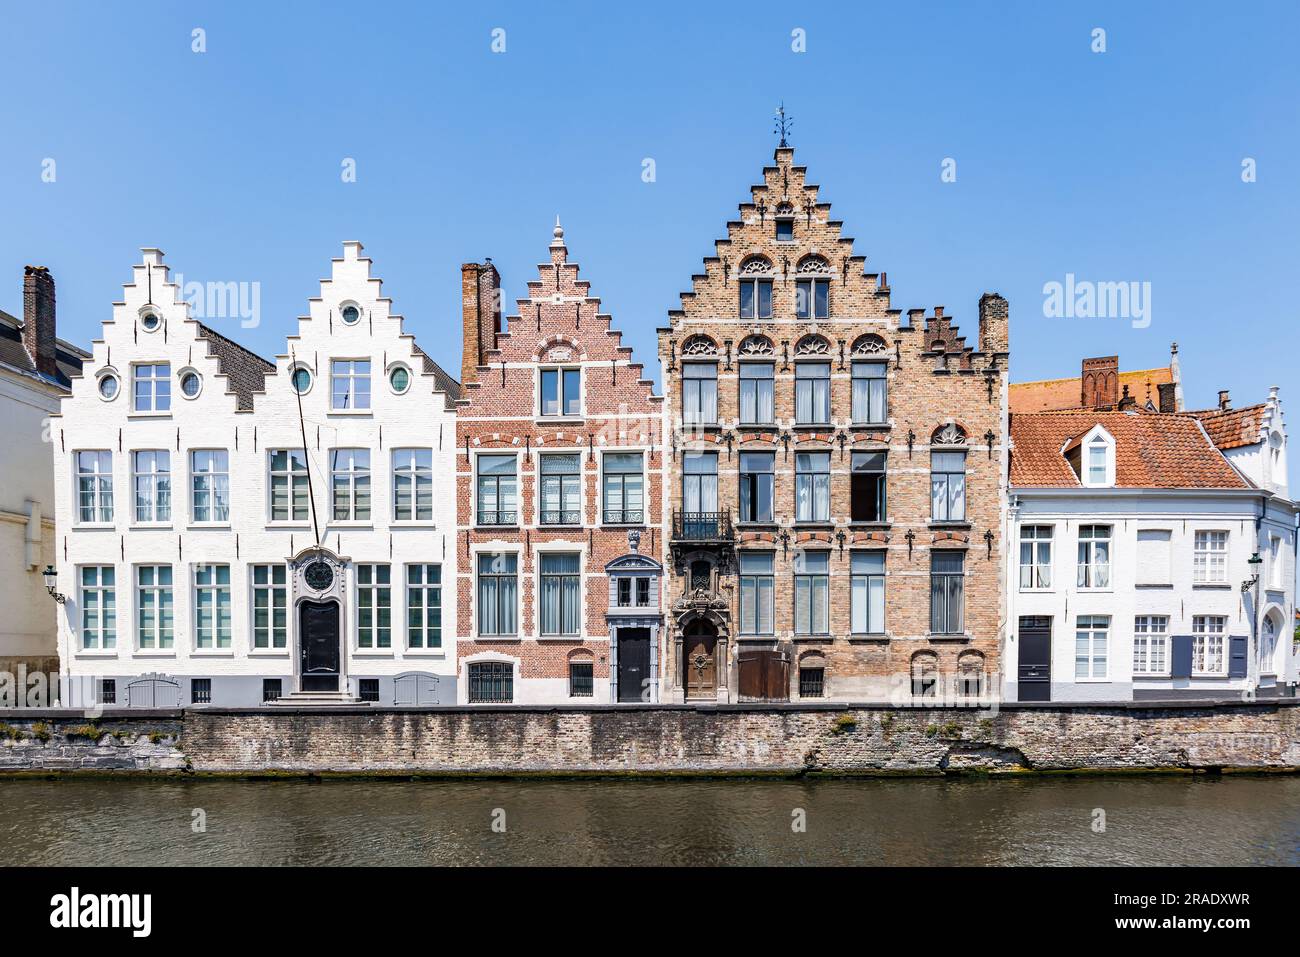 Tipico paesaggio urbano belga nella città di Bruges, Belgio, Europa. Una città molto turistica con un canale e vecchie case fiamminghe. Brugge, Belgio Foto Stock